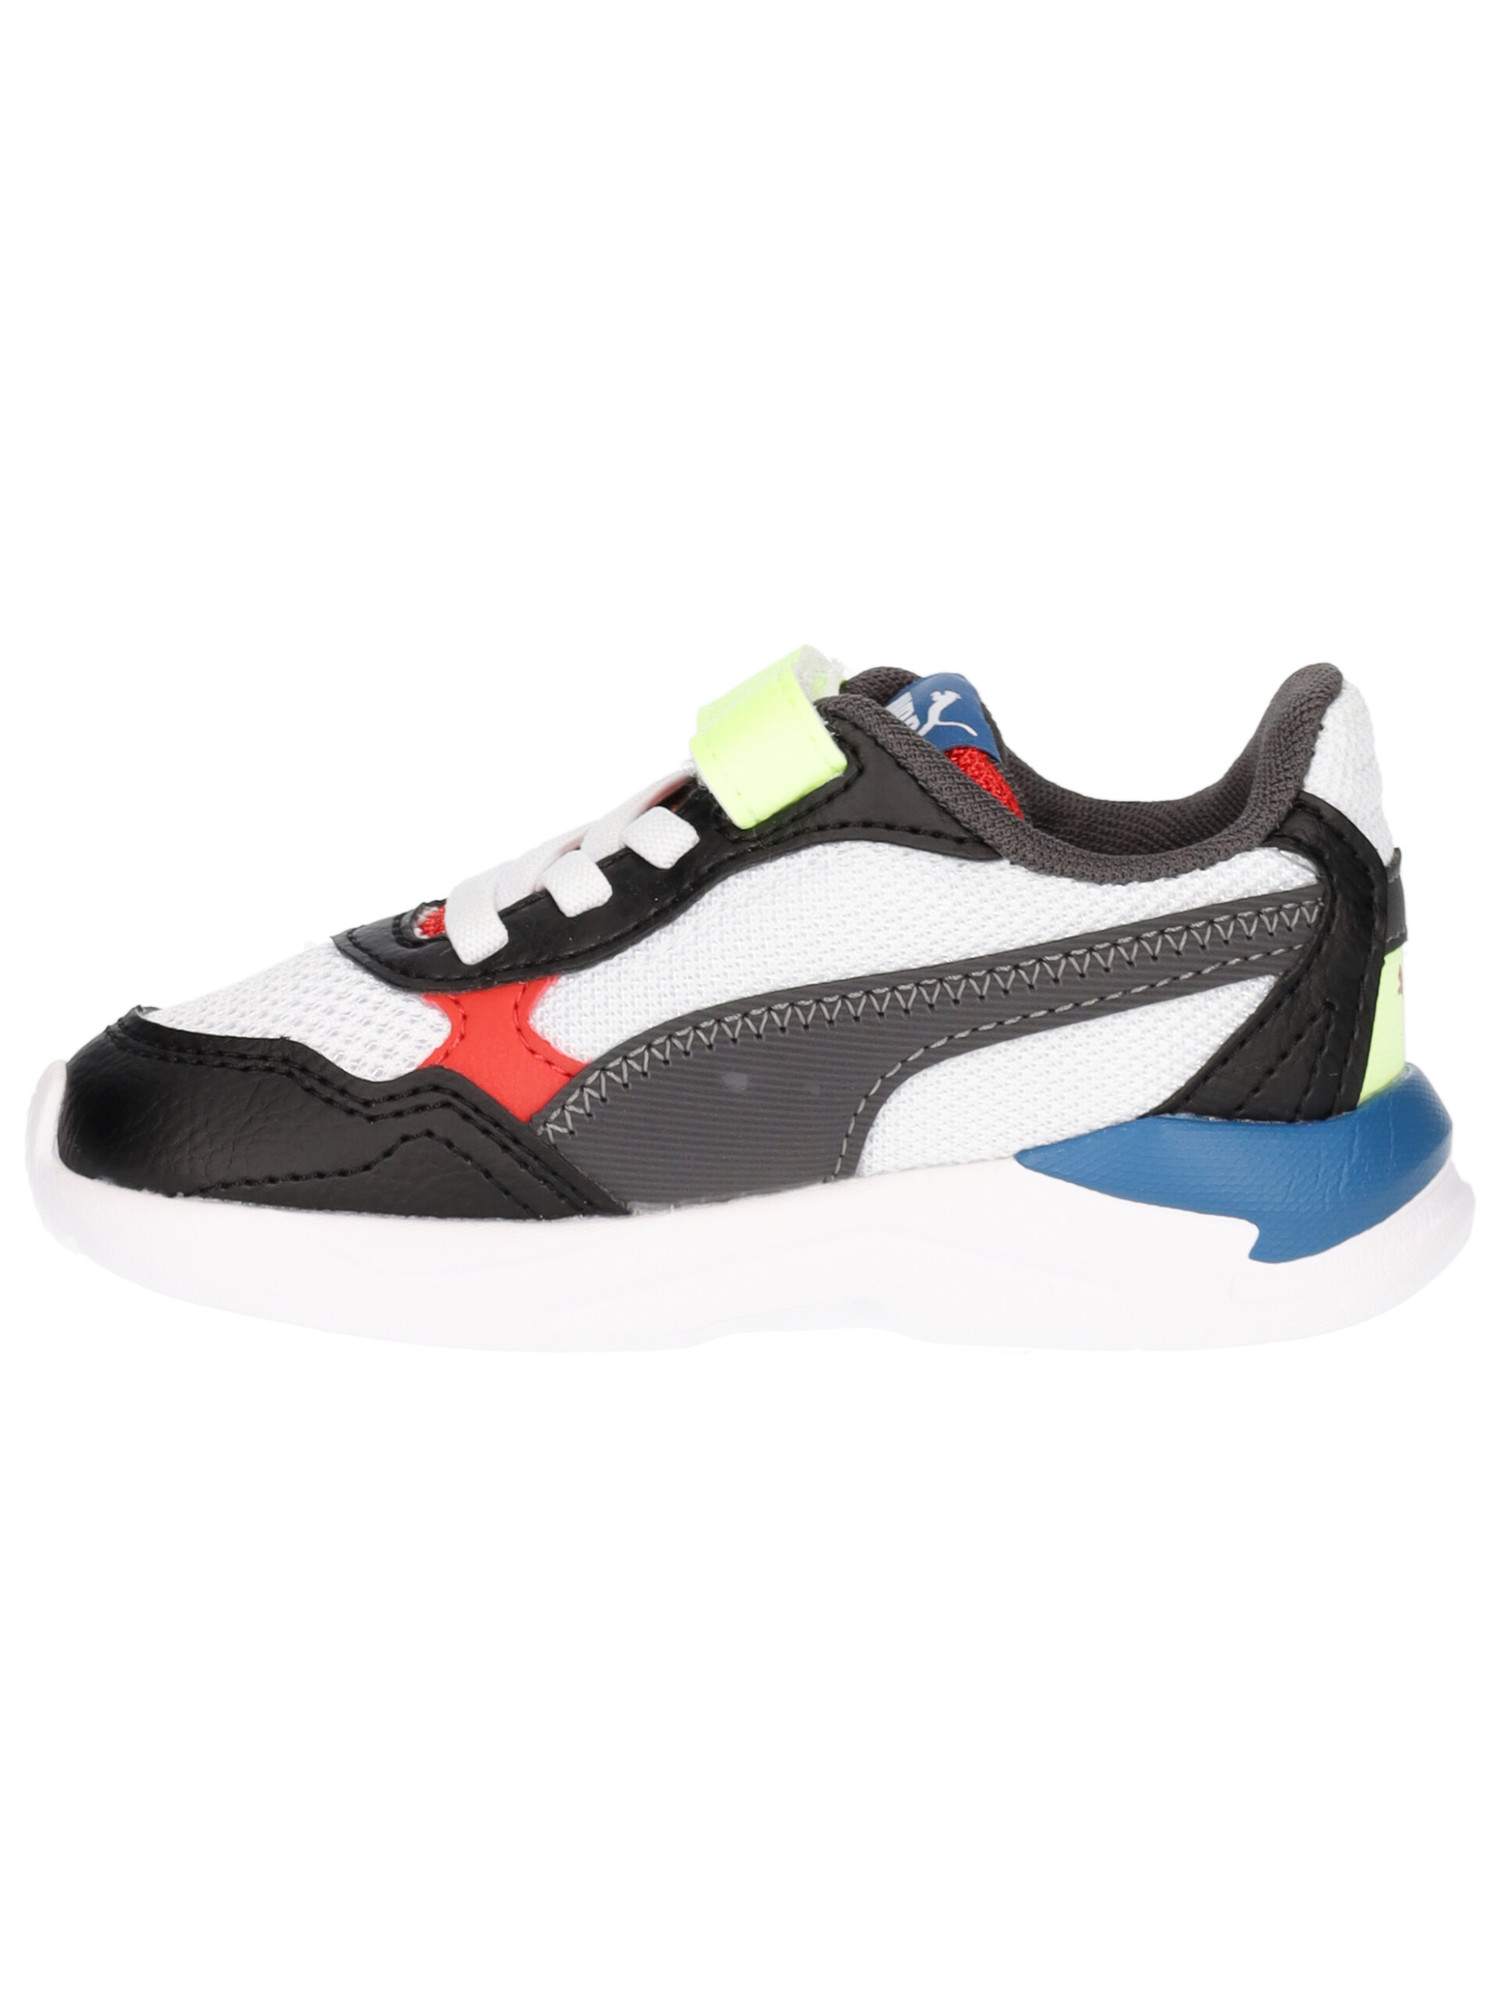 sneaker-puma-x-ray-speed-primi-passi-bambino-multicolor-8b4fa8